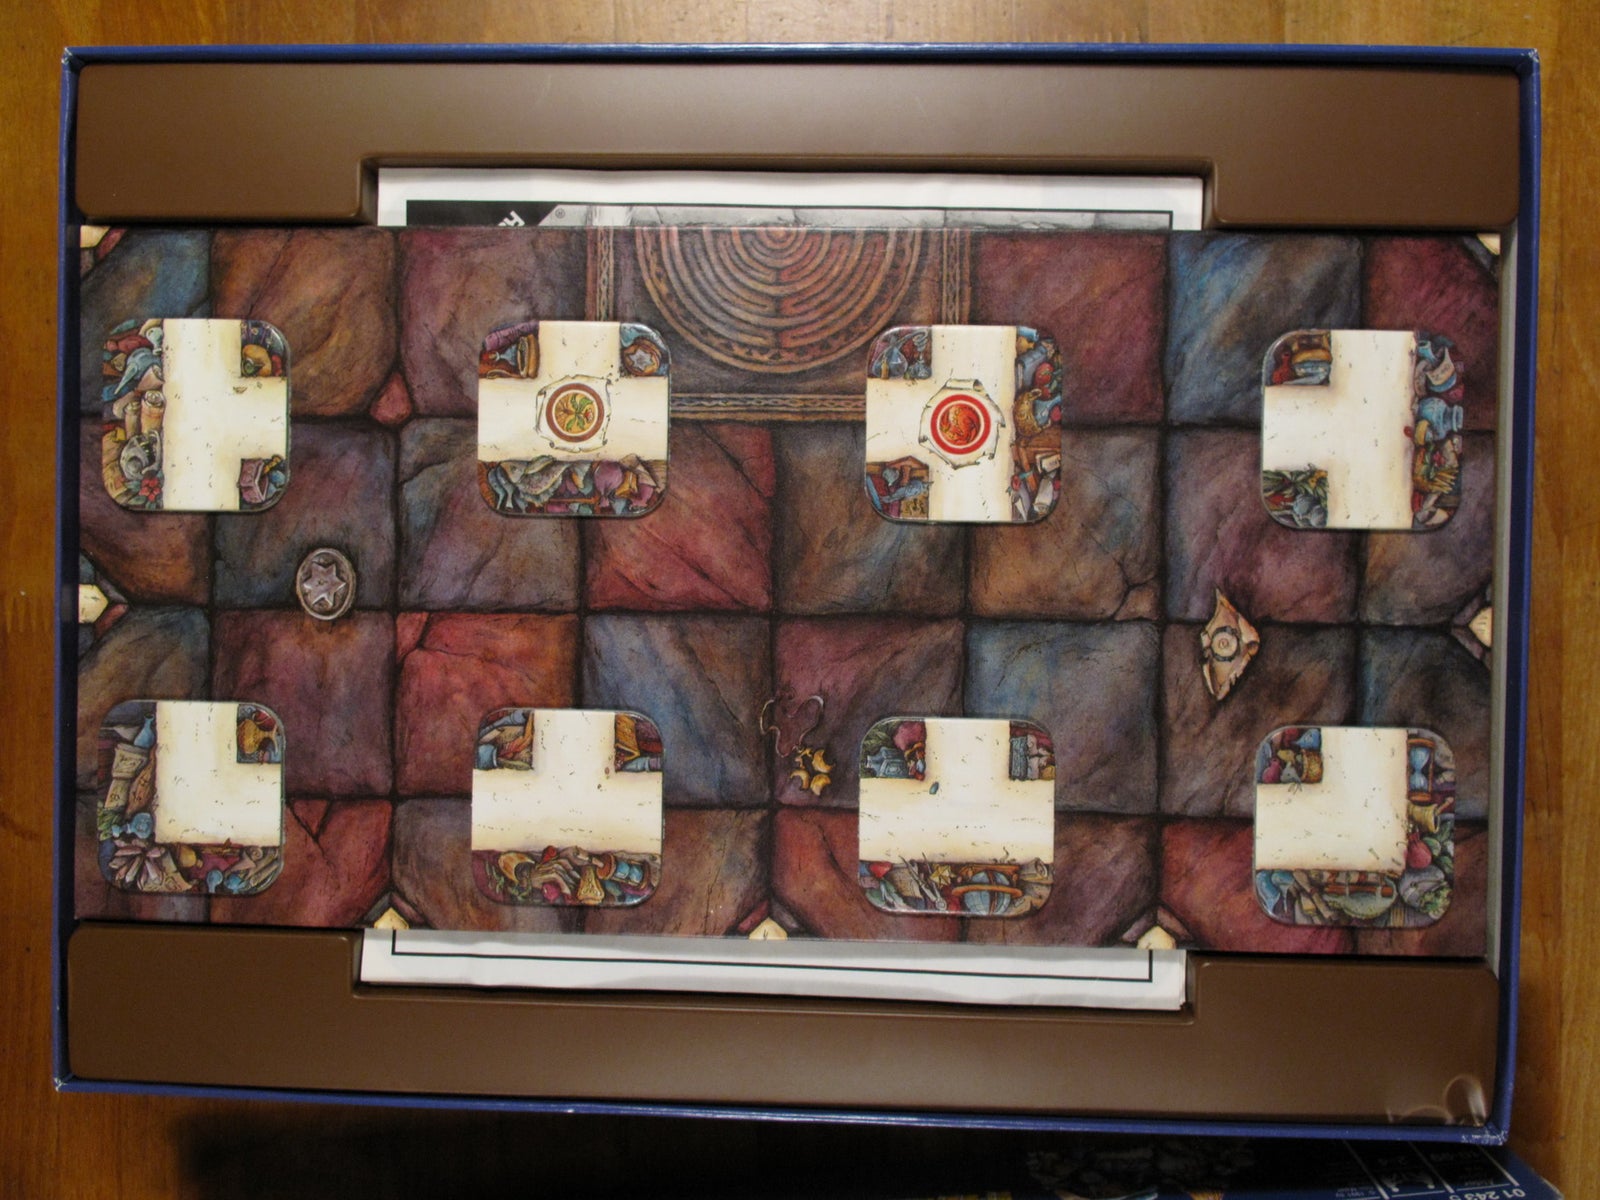 Master Labyrinth (Årets familiespil fra 1991), brætspil